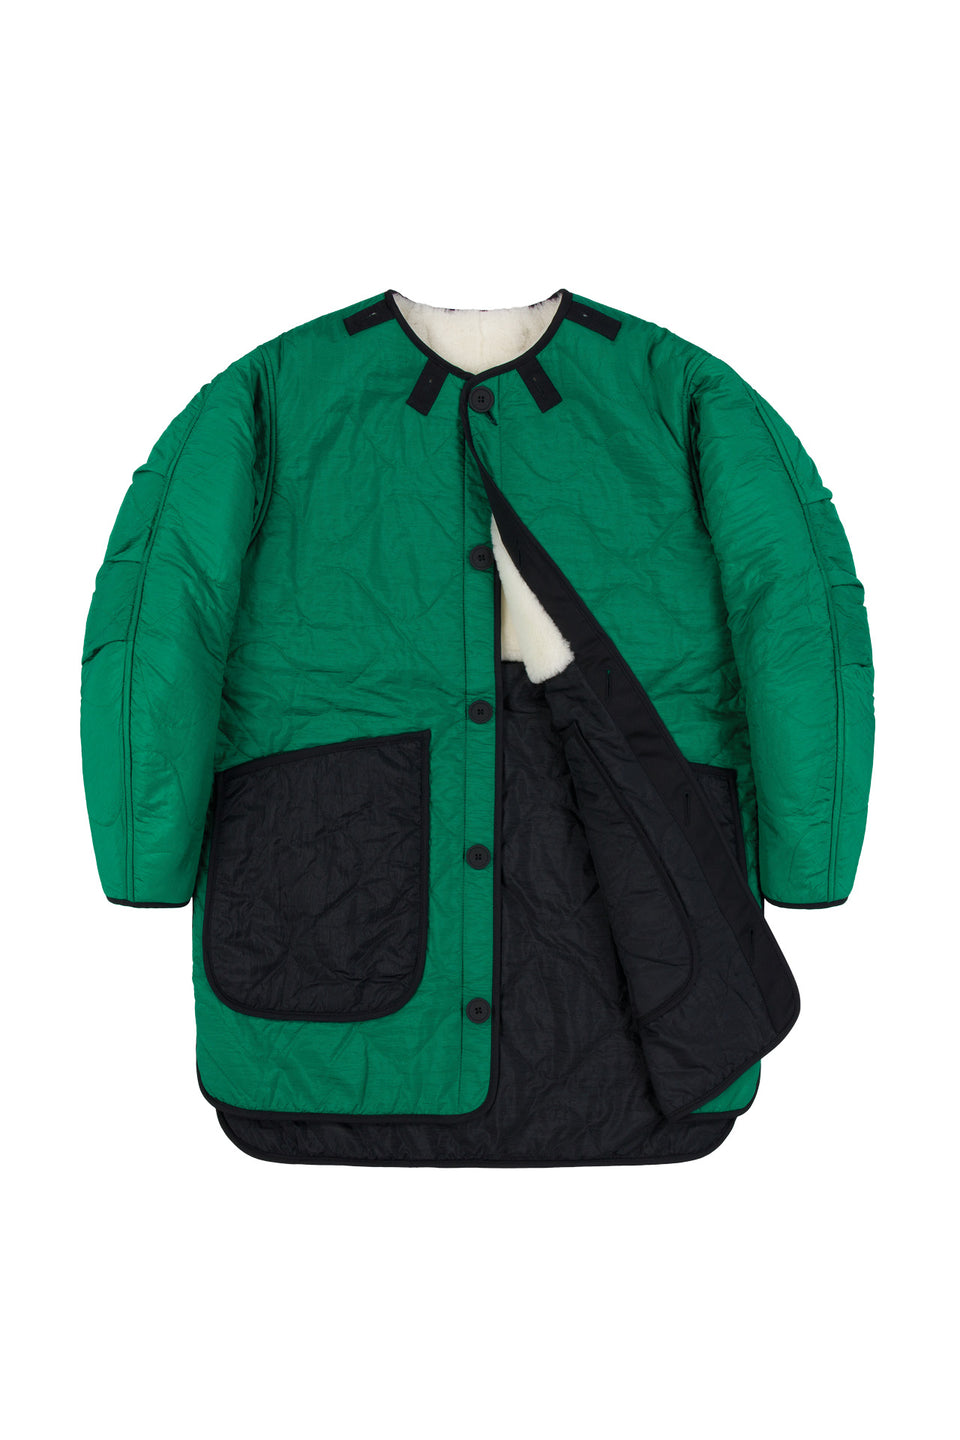 Shearling Quilt Jacket - Natural / Emerald (listing page thumbnail)